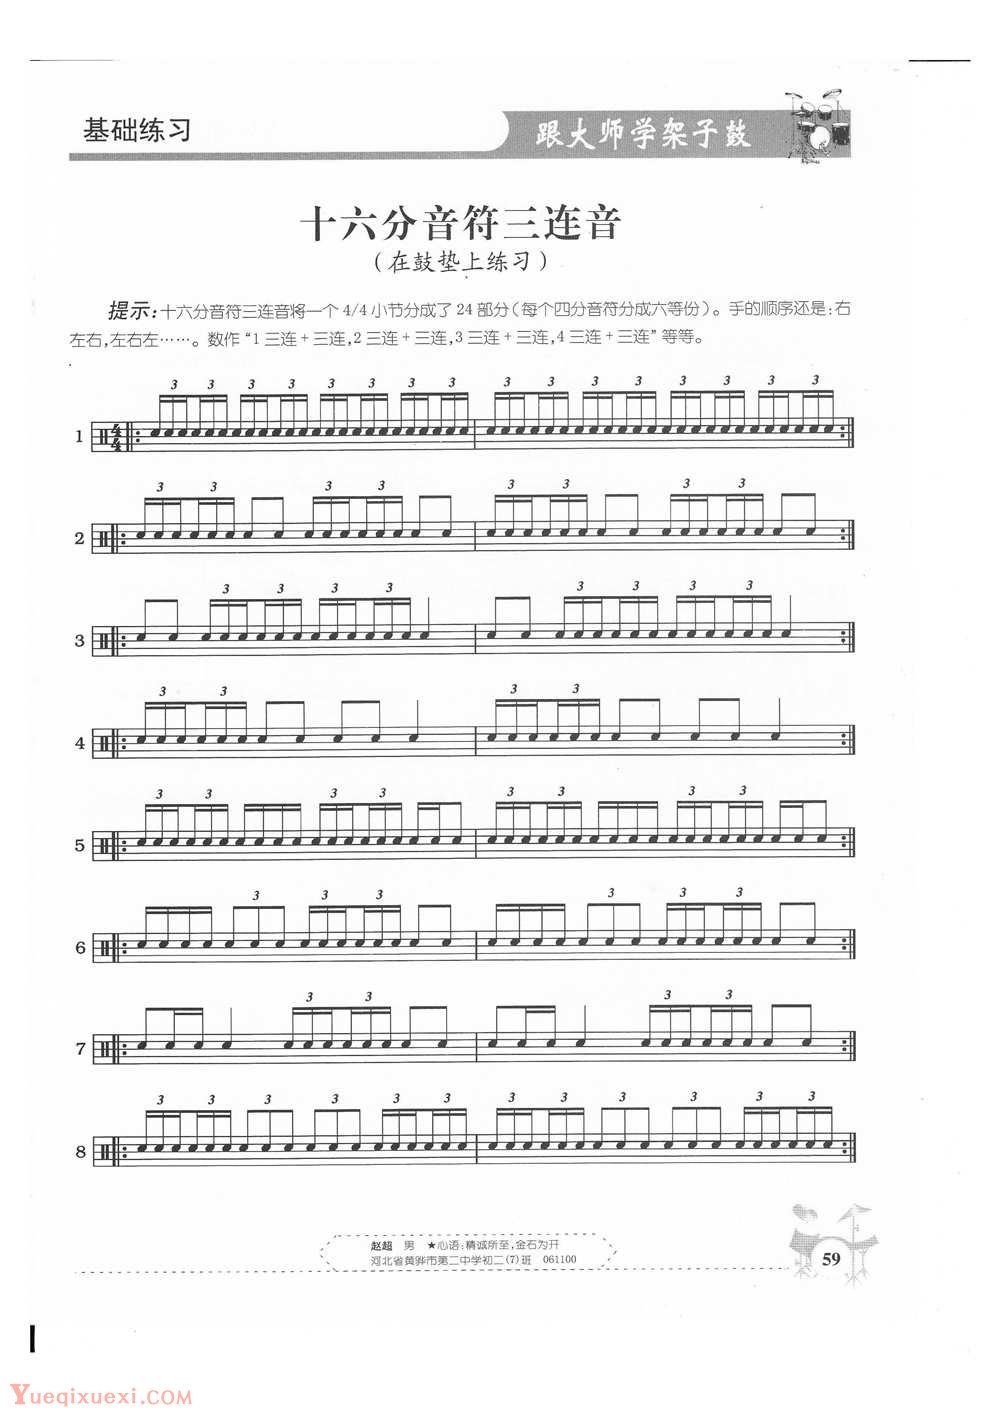 架子鼓基础练习 十六分音符三连音(在鼓垫上练习)